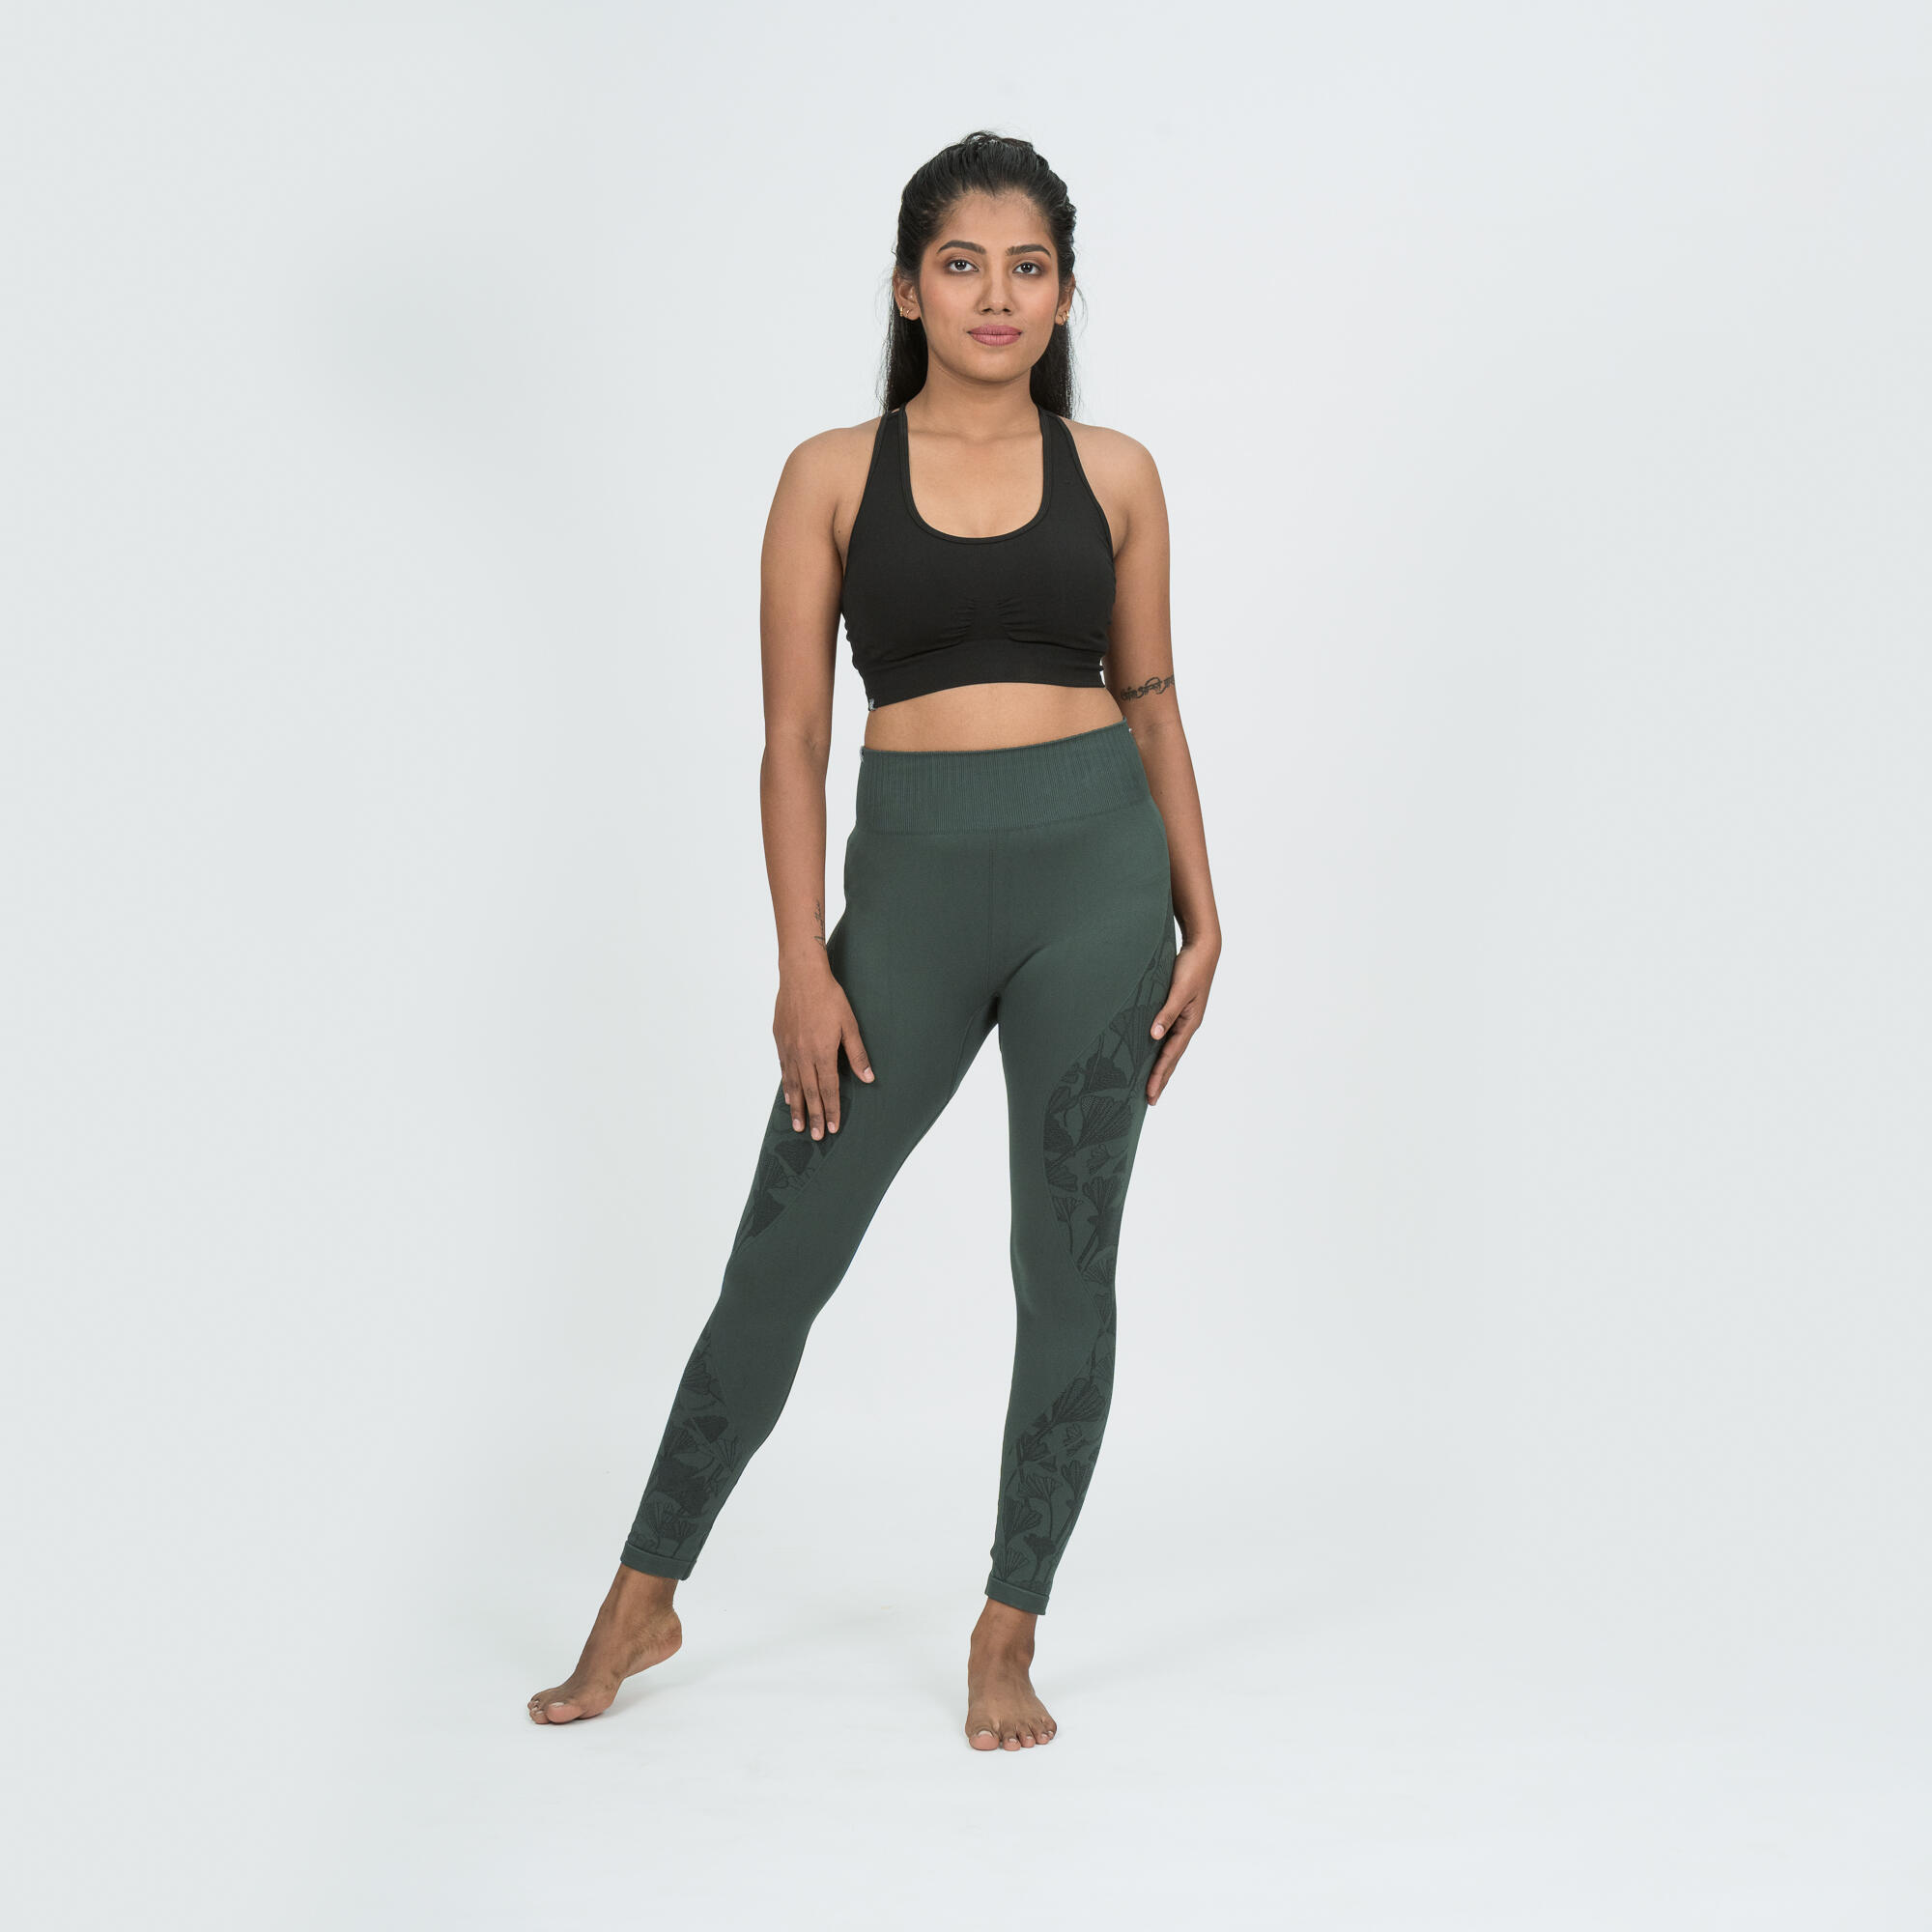 Yoga Leggings For Women | Ocean Green Light Leggins | WearNoa